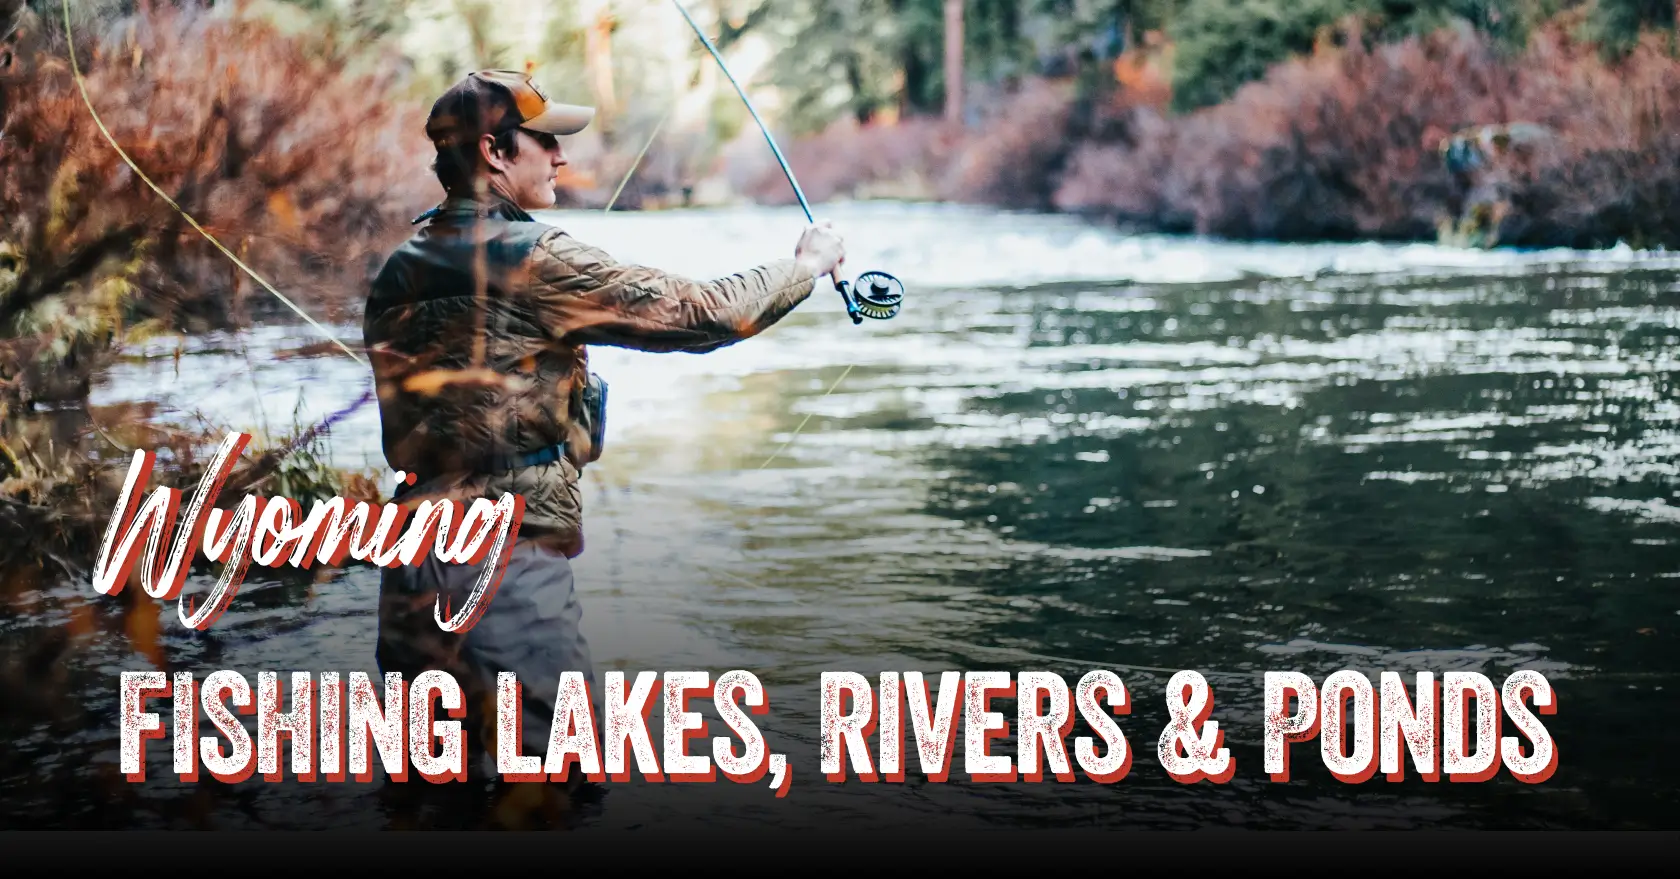 Fishing Lake Report - Wyoming Fishing Lakes Report Guides